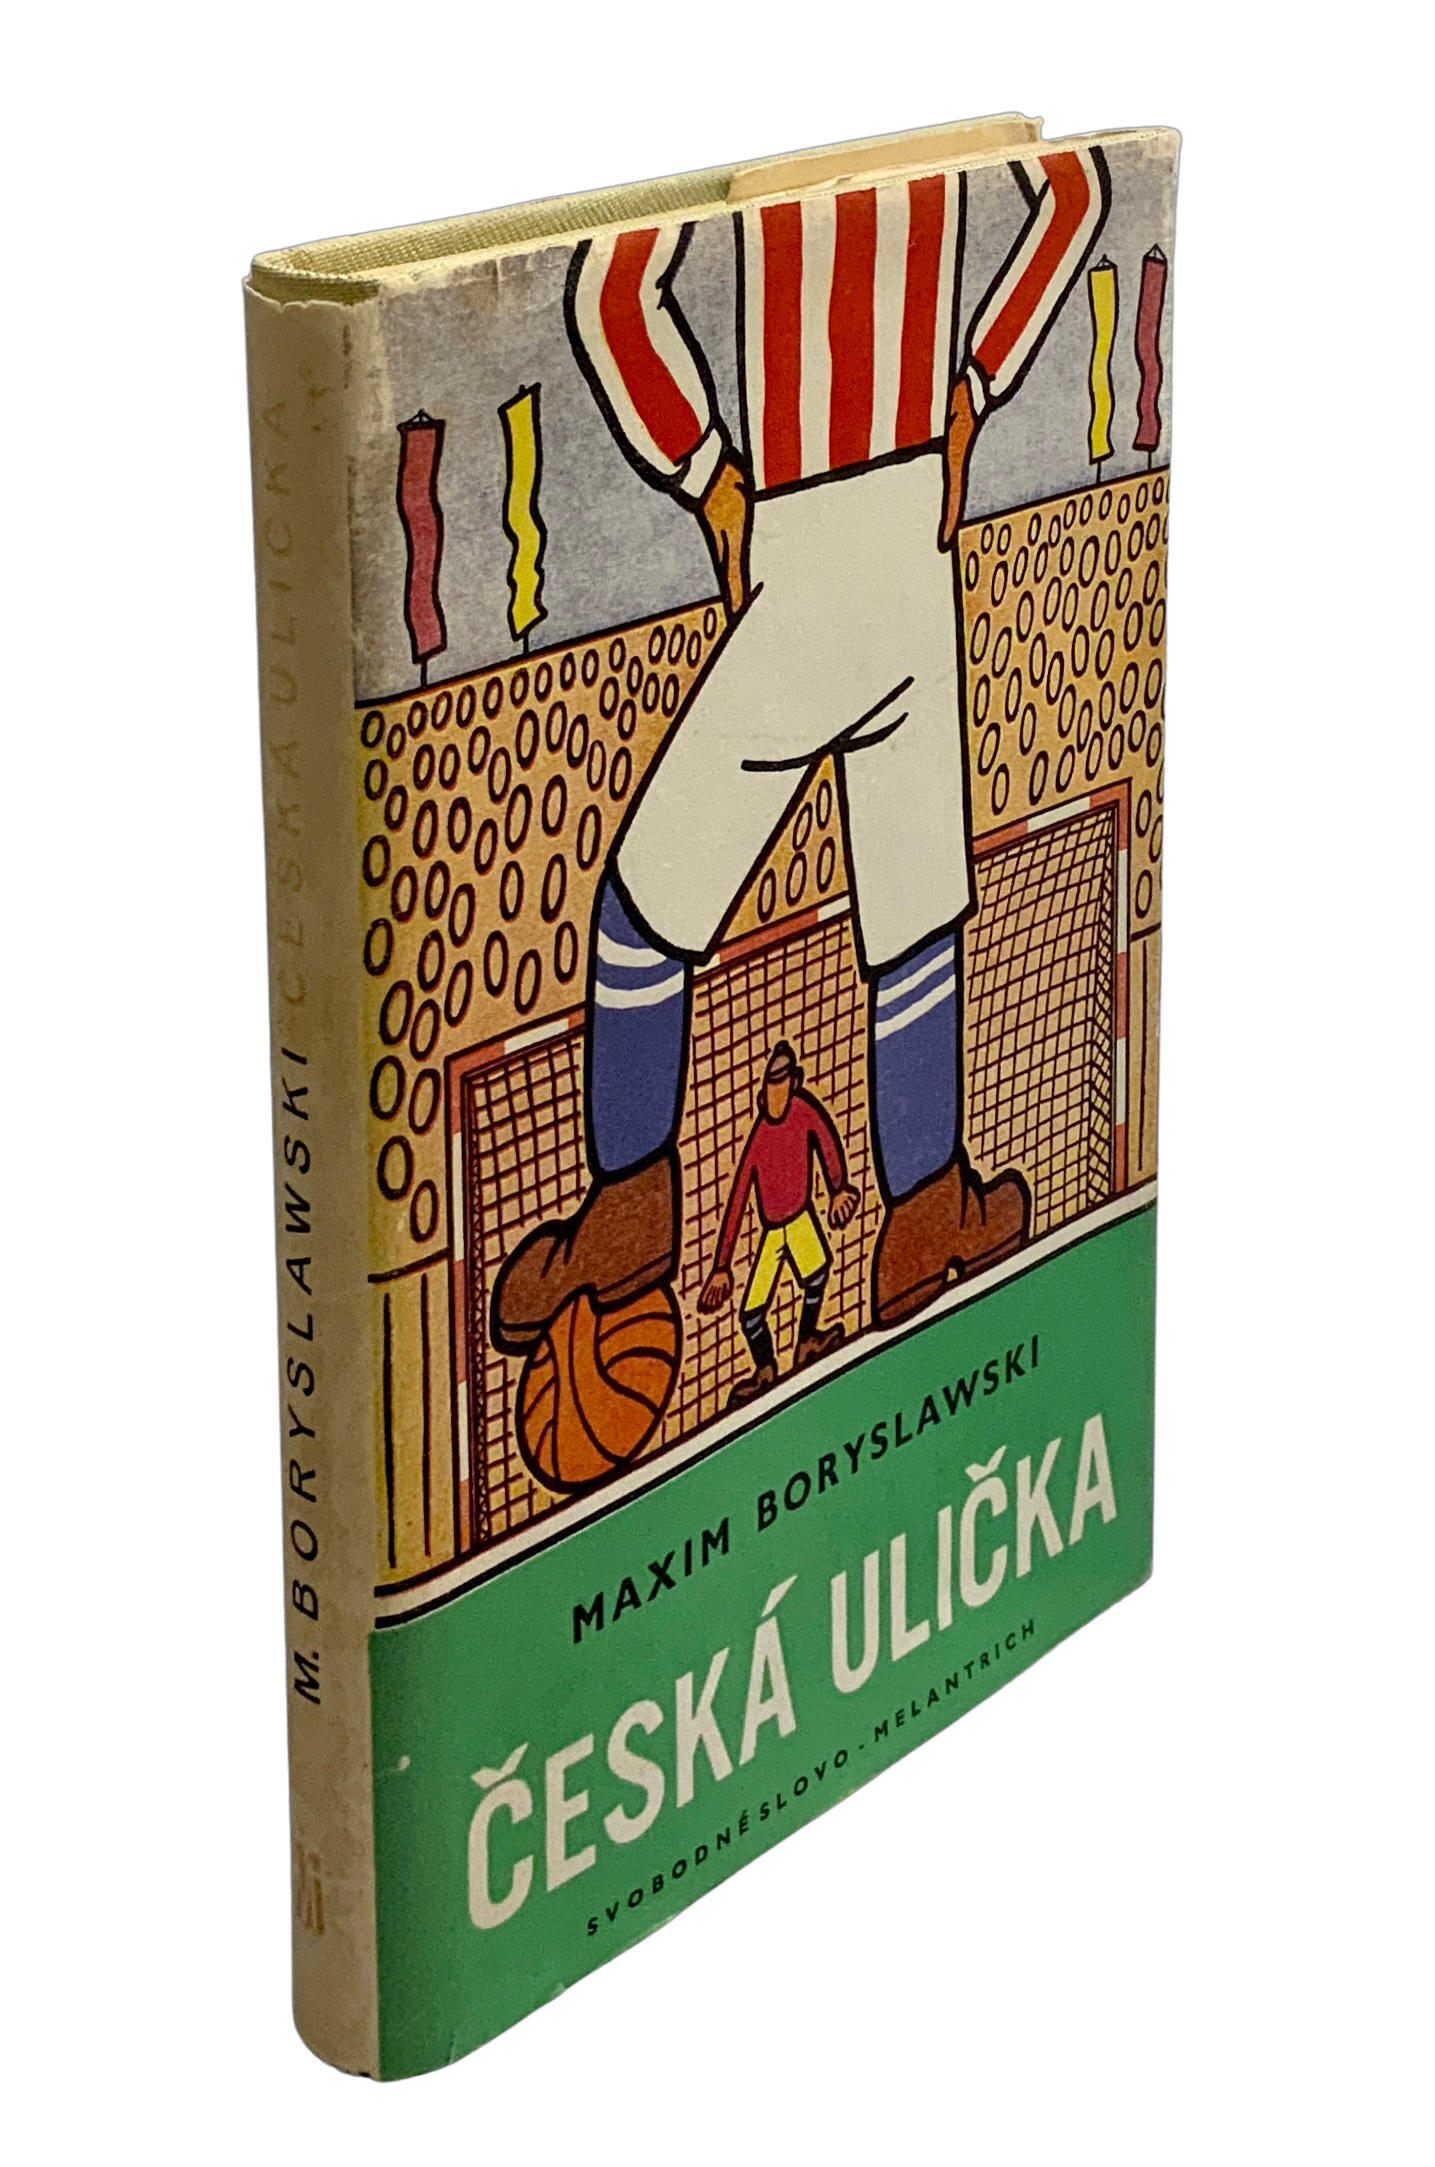 Česká ulička